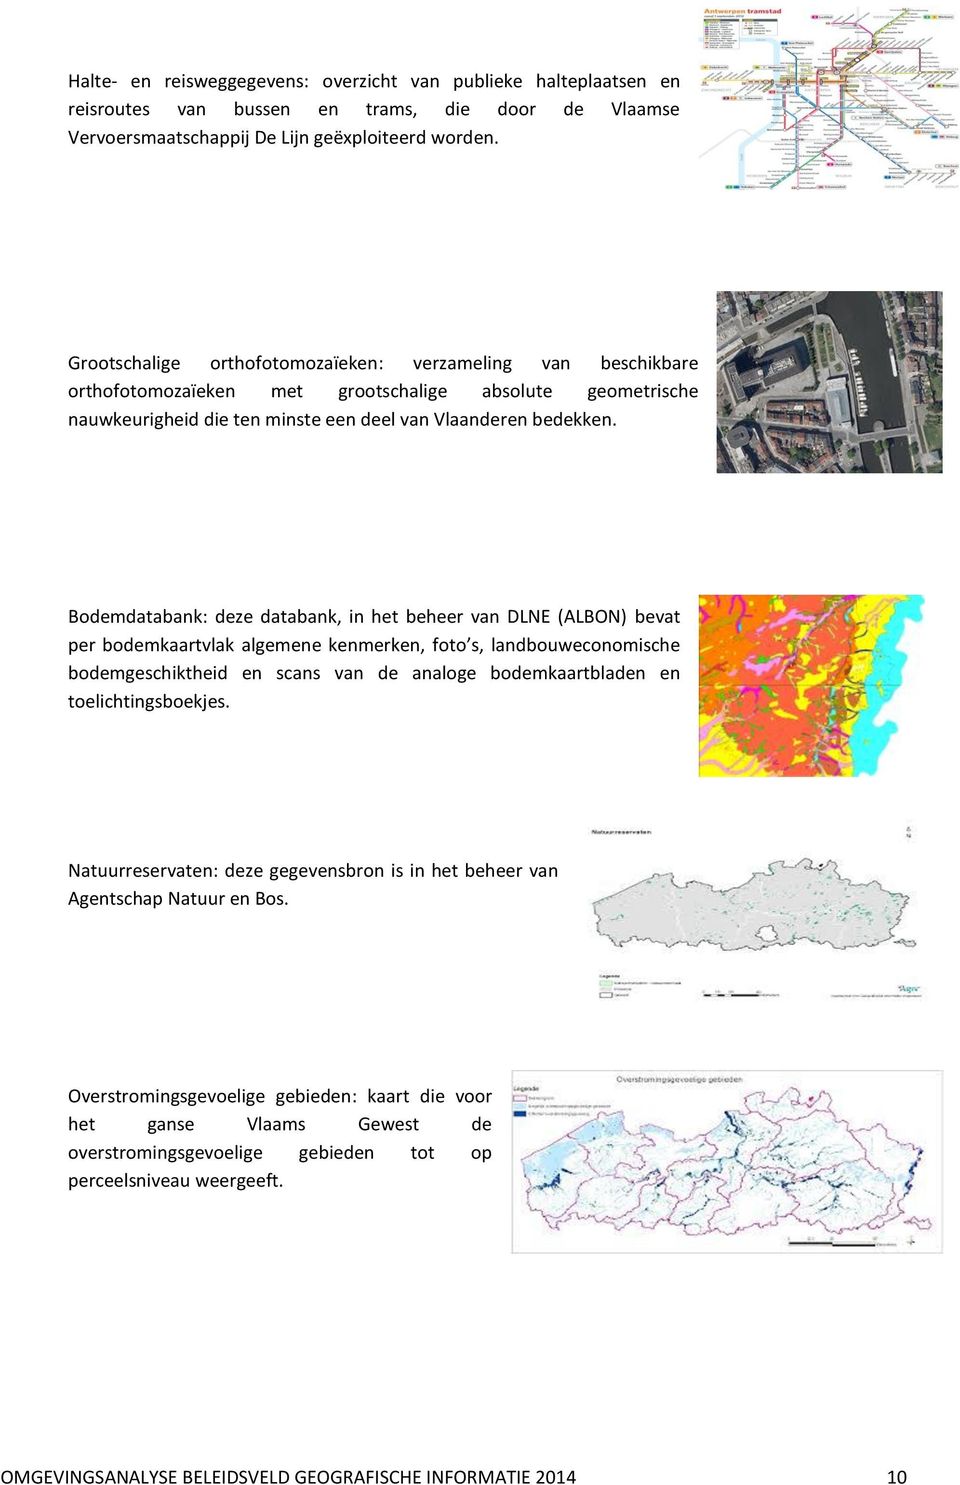 Bodemdatabank: deze databank, in het beheer van DLNE (ALBON) bevat per bodemkaartvlak algemene kenmerken, foto s, landbouweconomische bodemgeschiktheid en scans van de analoge bodemkaartbladen en